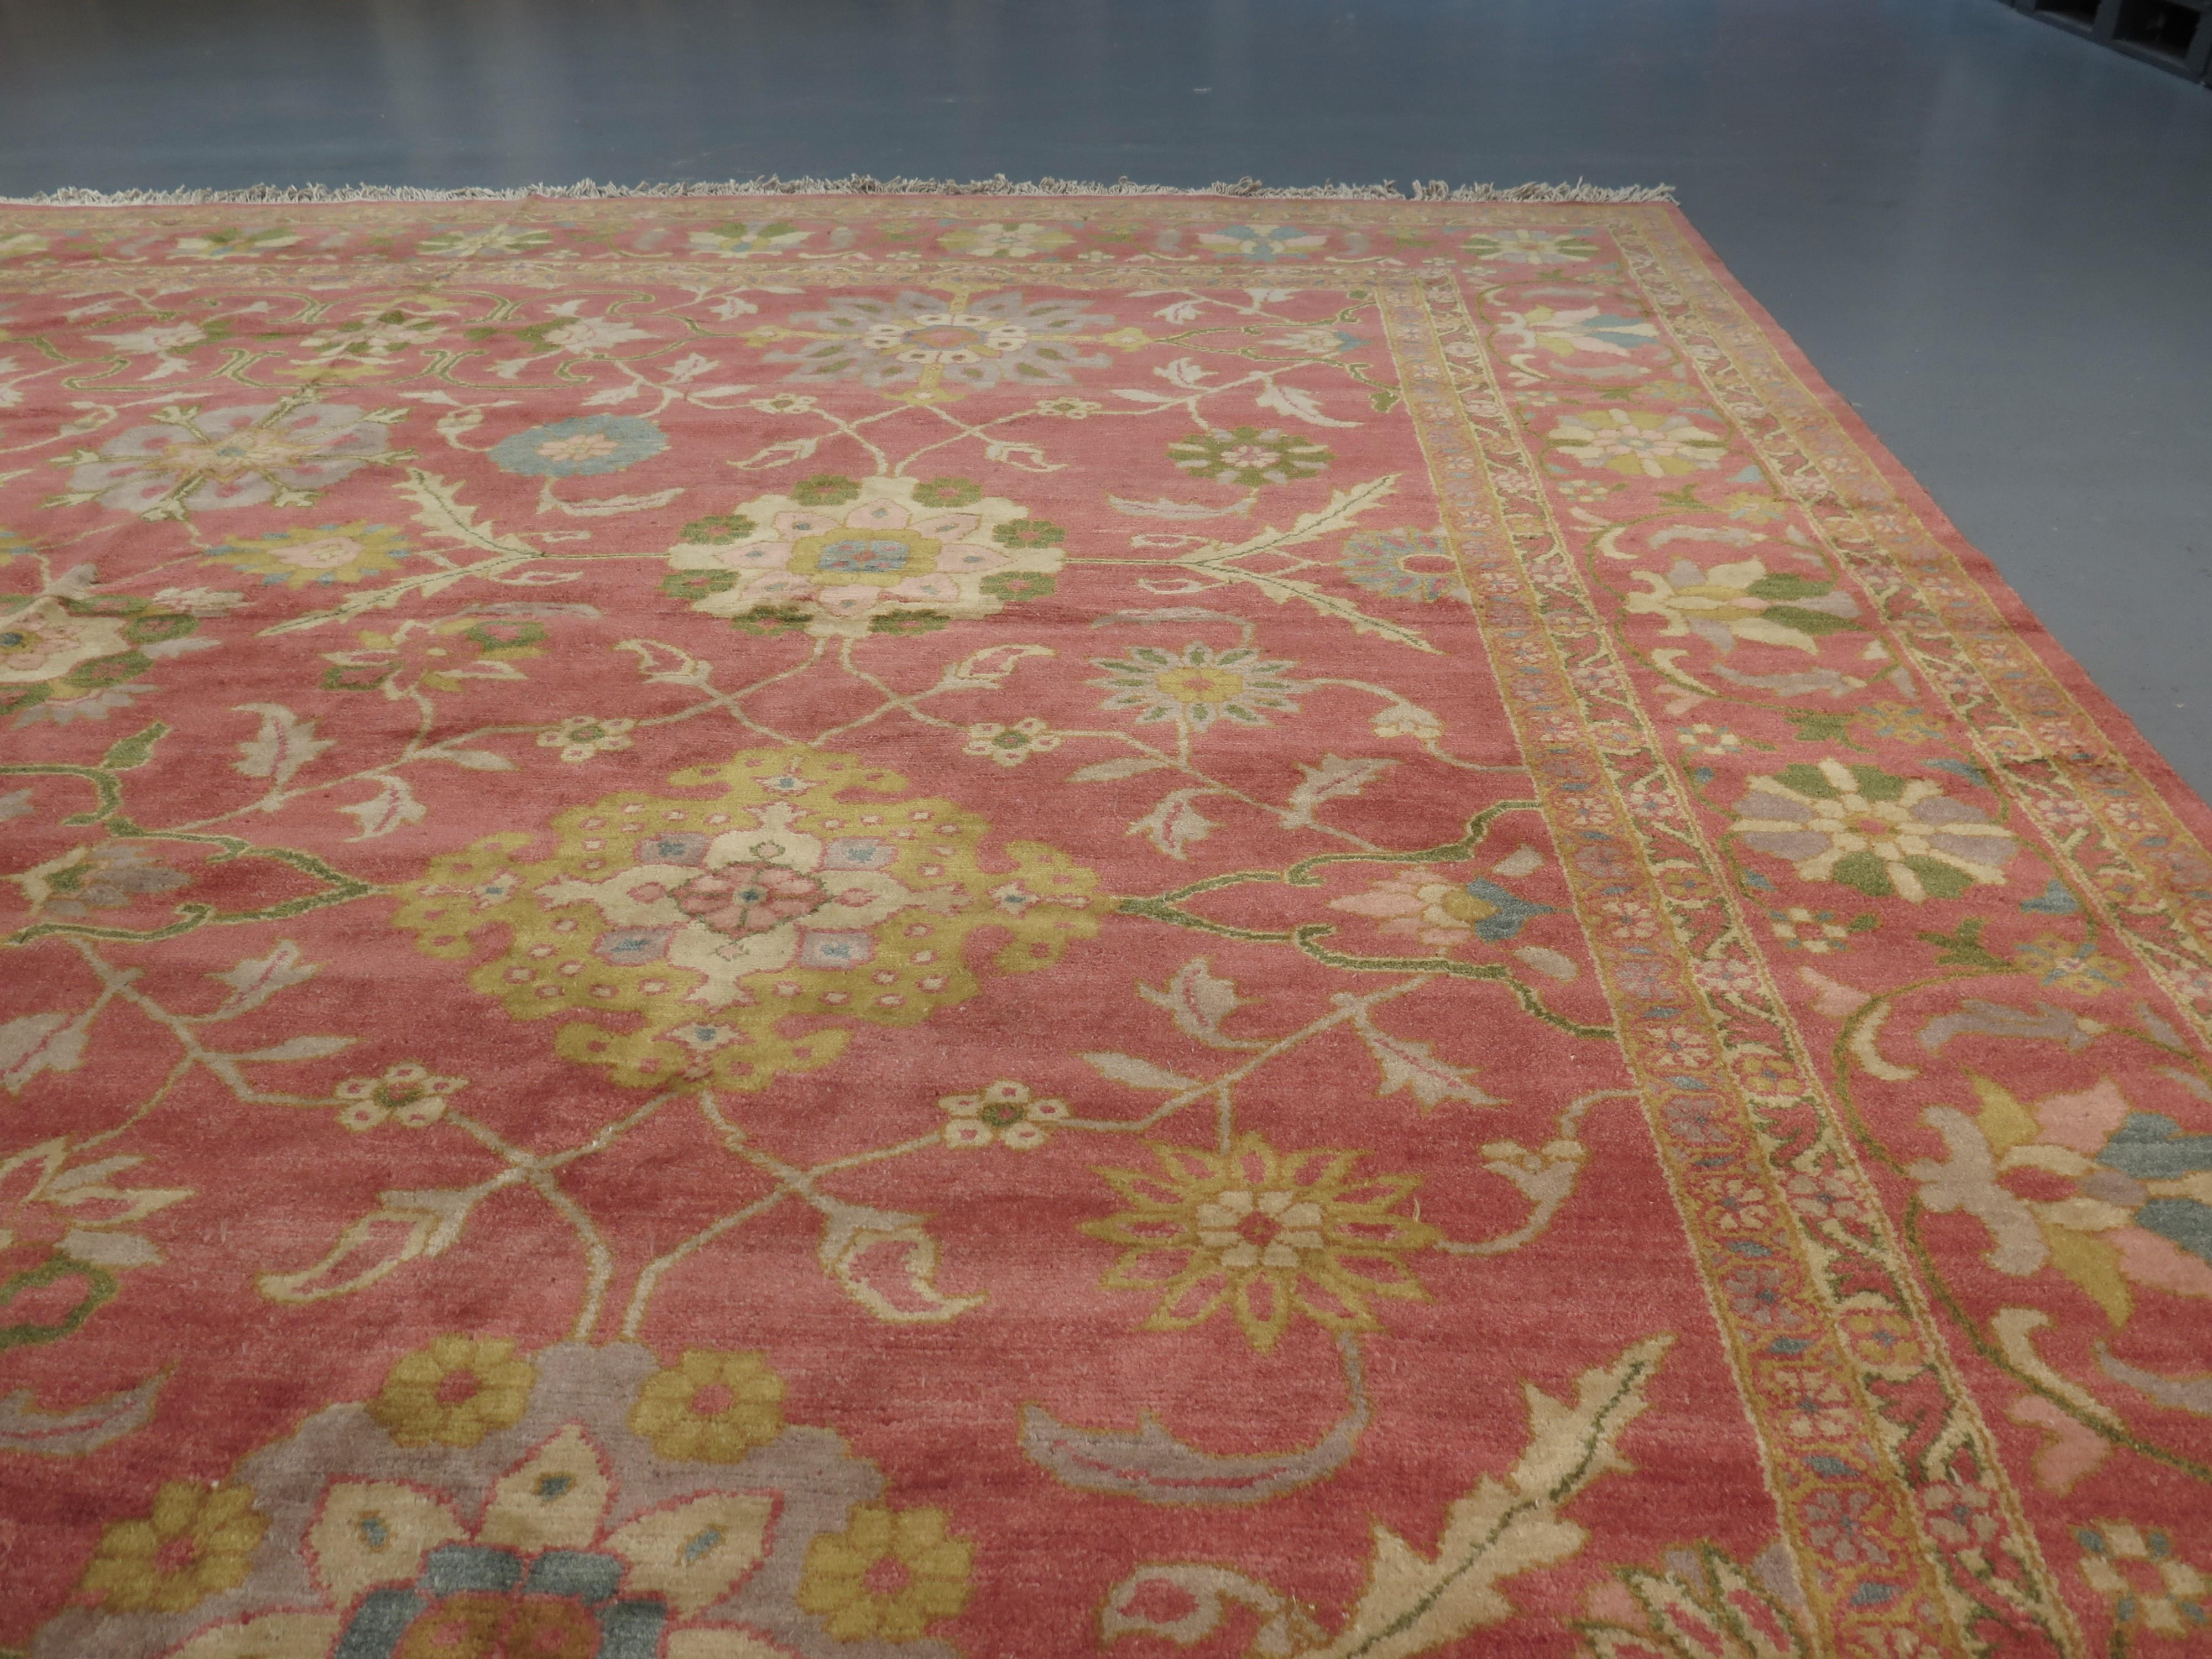 Die Sultanabad-Teppiche von Ziegler wurden ursprünglich im späten 19. Jahrhundert in Persien für den westlichen Markt in Auftrag gegeben, um den westlichen Einrichtungsgeschmack zu ergänzen, und erfreuten sich dank ihrer einzigartigen,